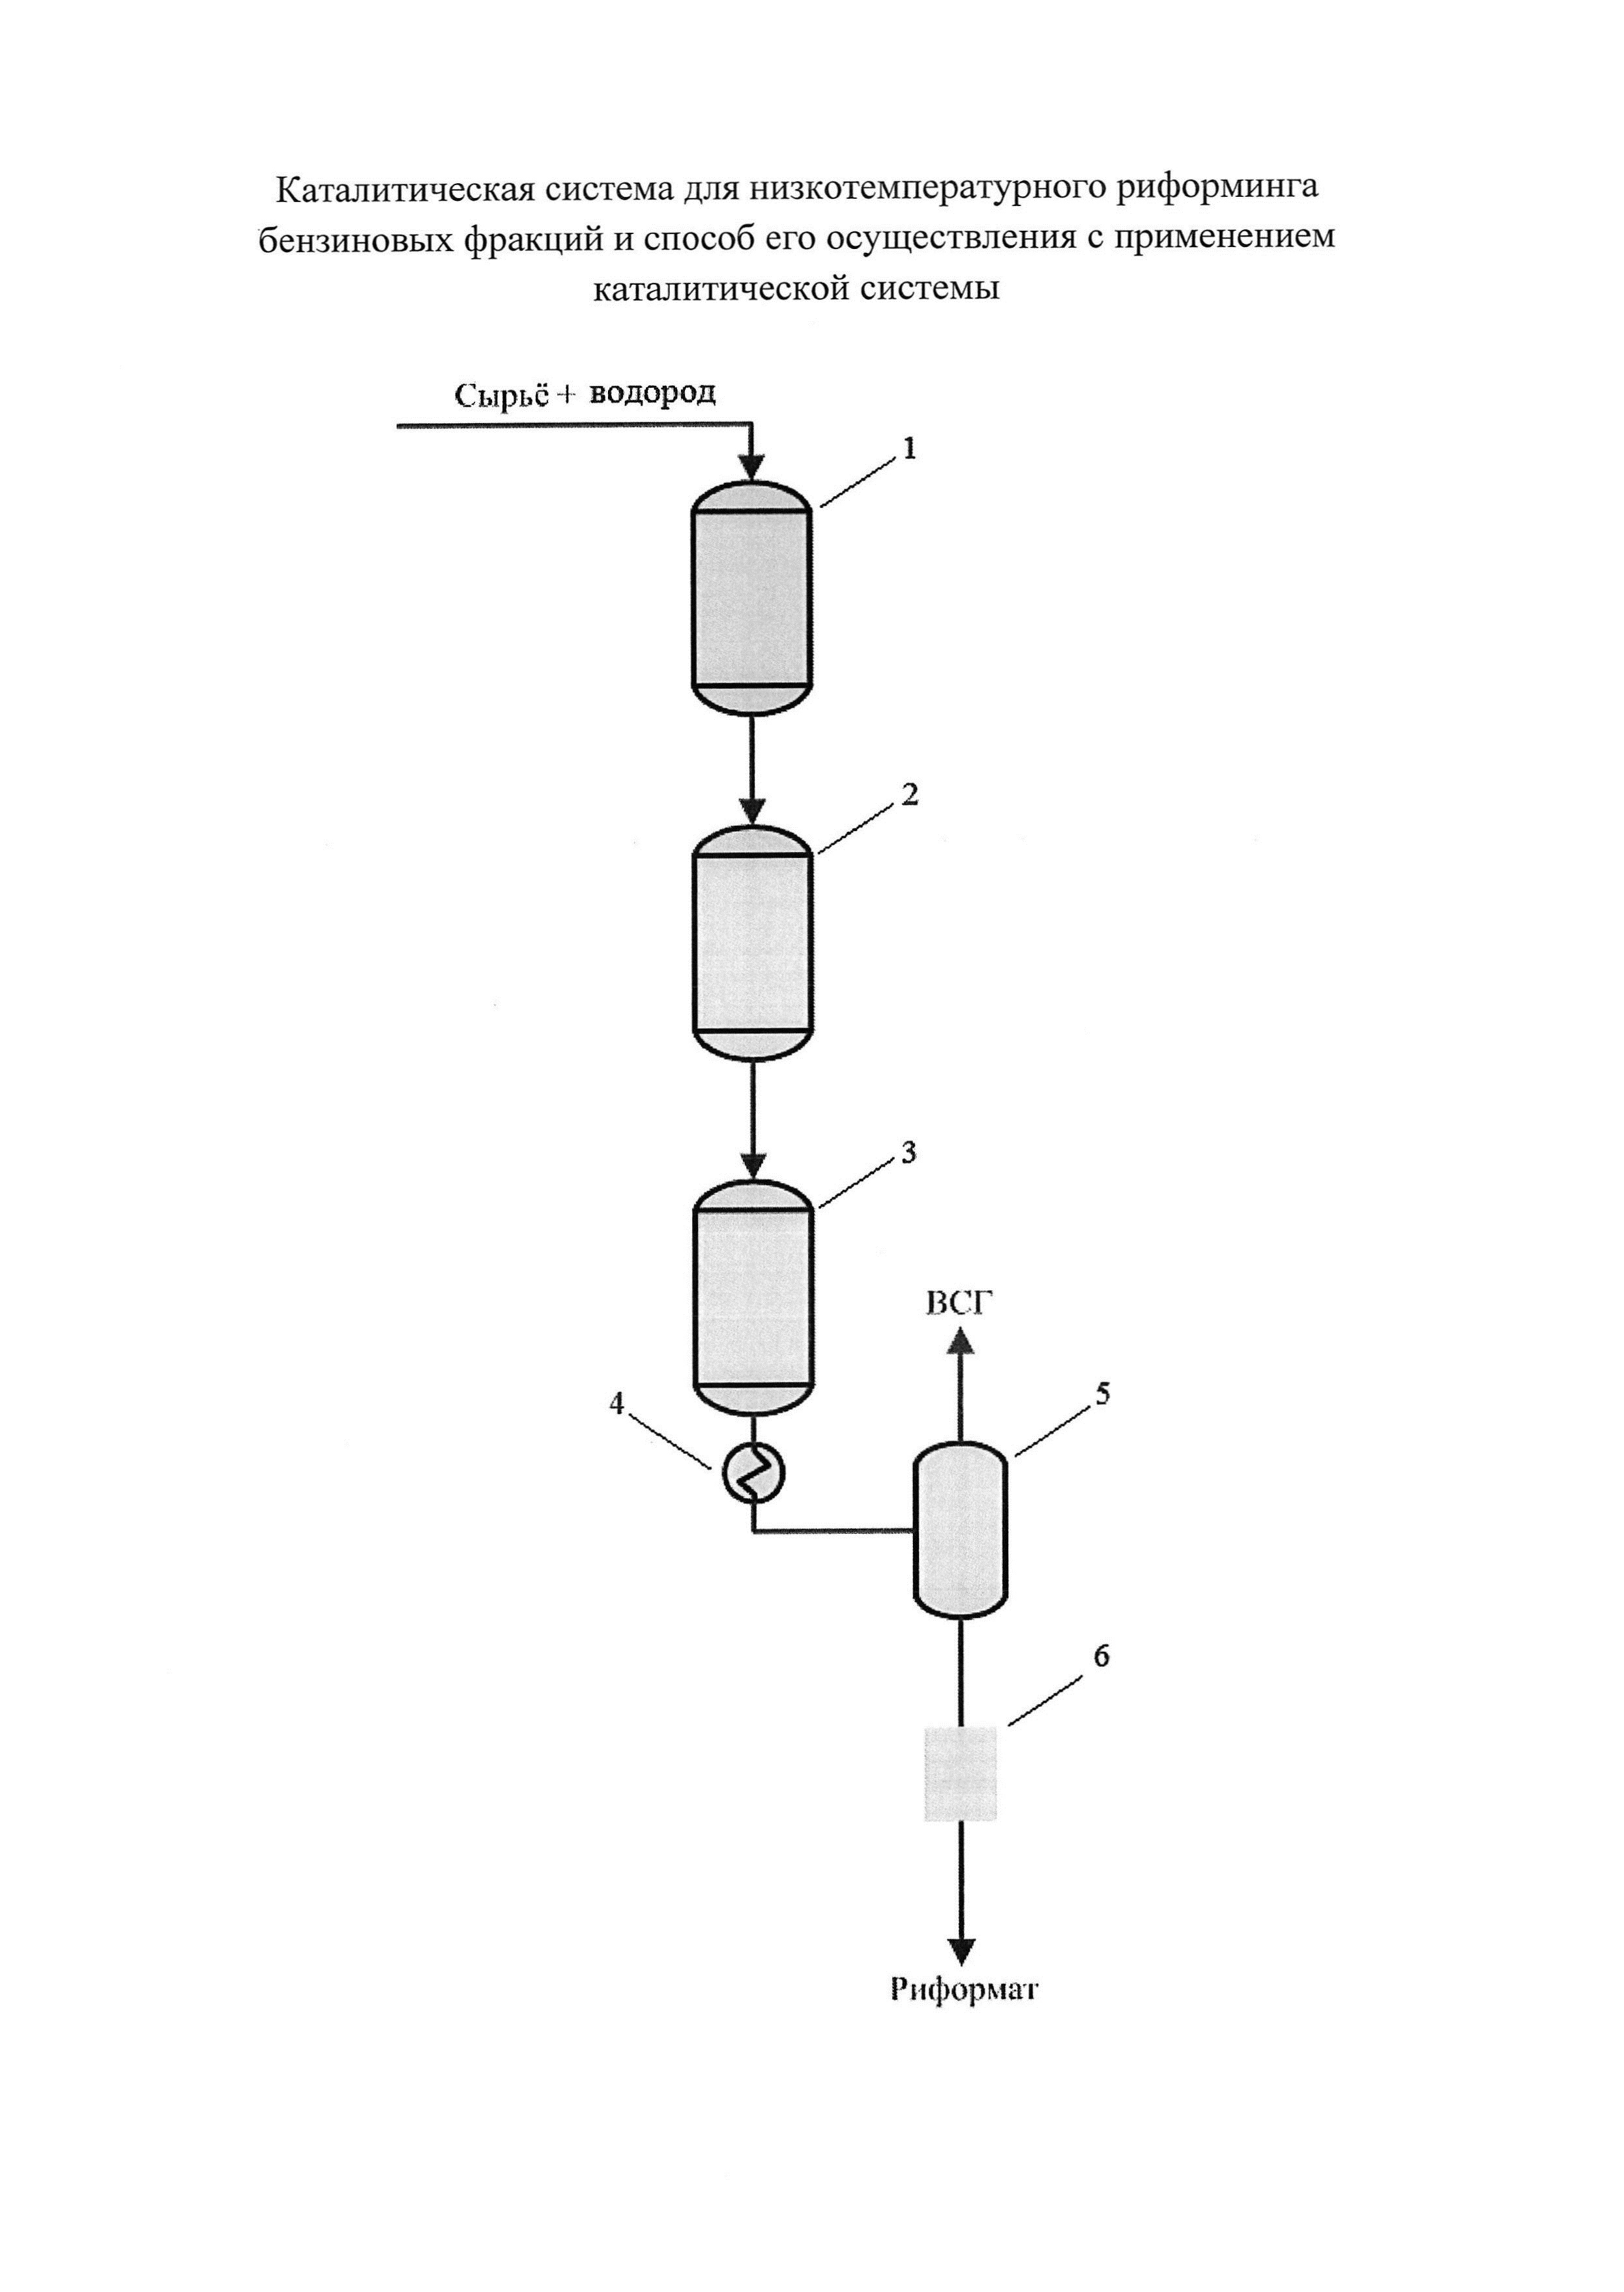 Каталитическая система для низкотемпературного риформинга бензиновых фракций и способ его осуществления с применением каталитической системы